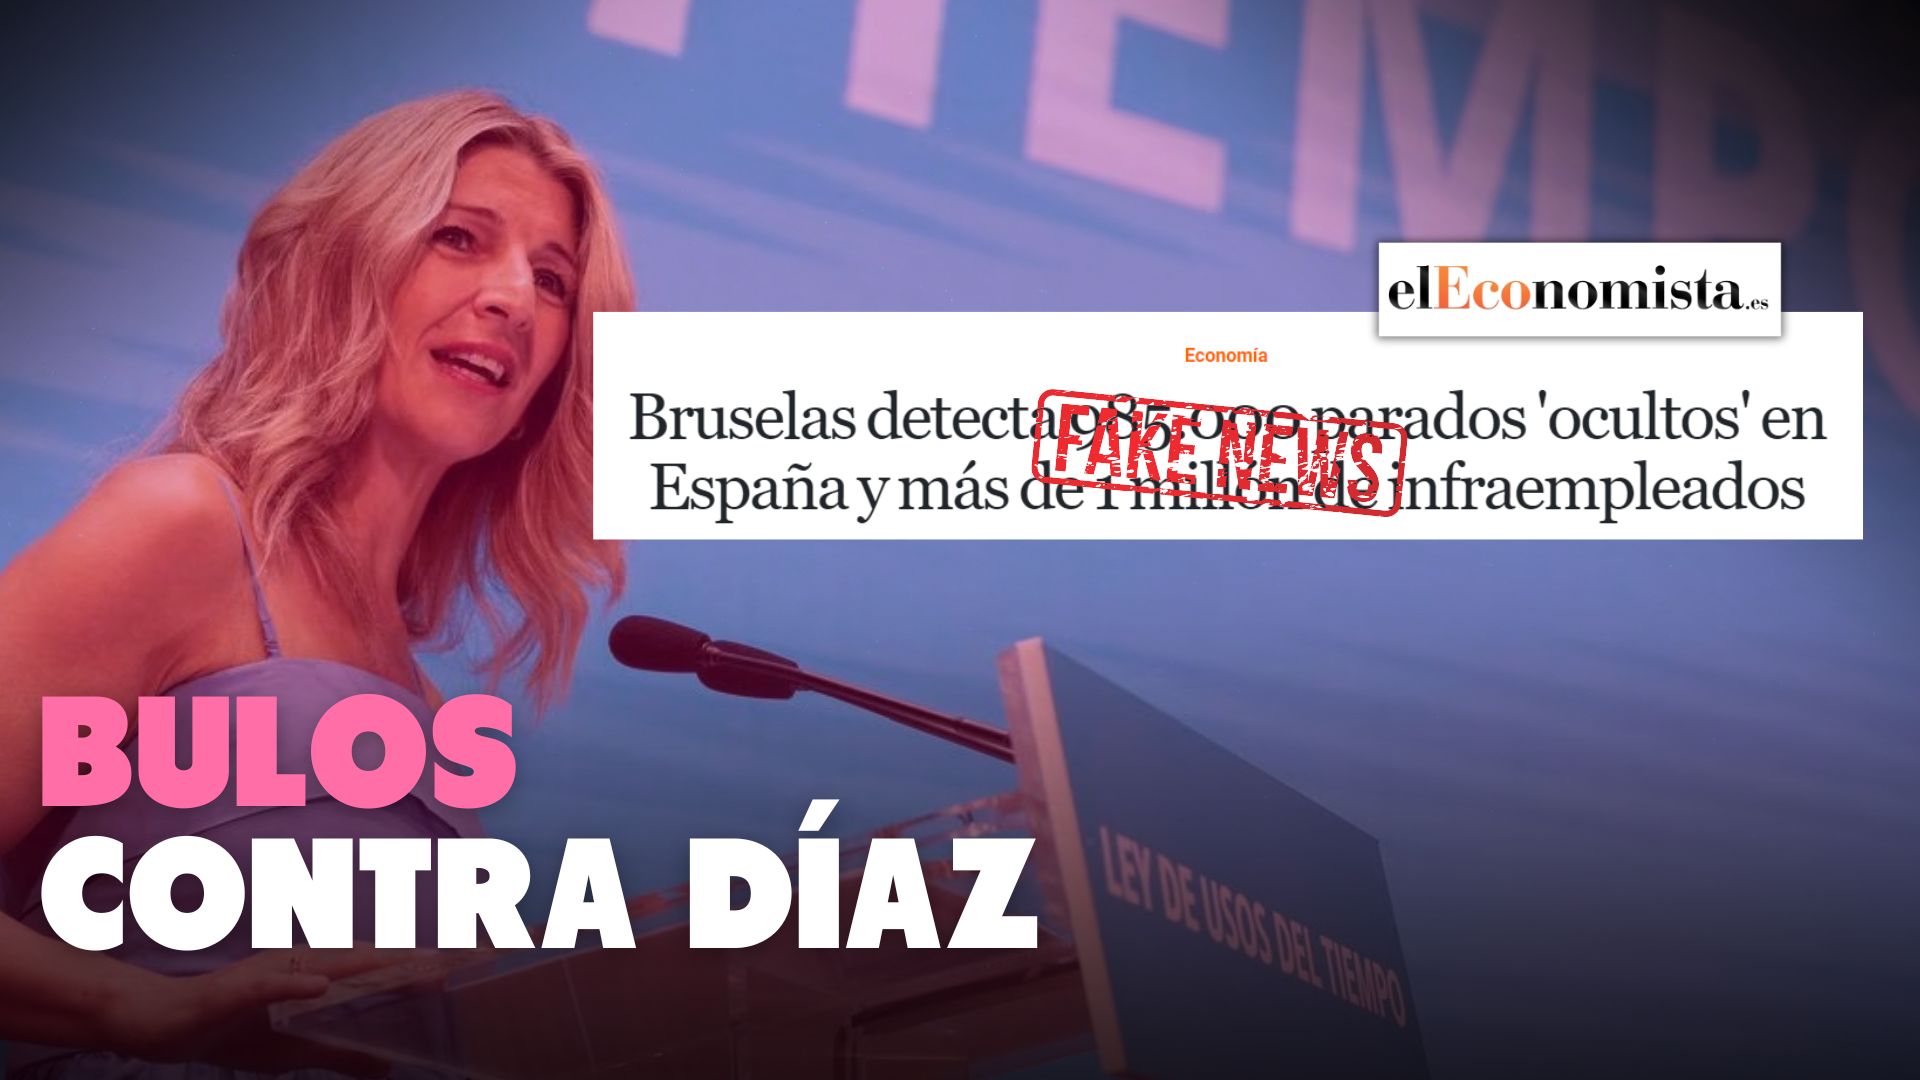 El Economista y el bulo contra Yolanda Díaz de los “parados ocultos”: desmontando fake news liberales